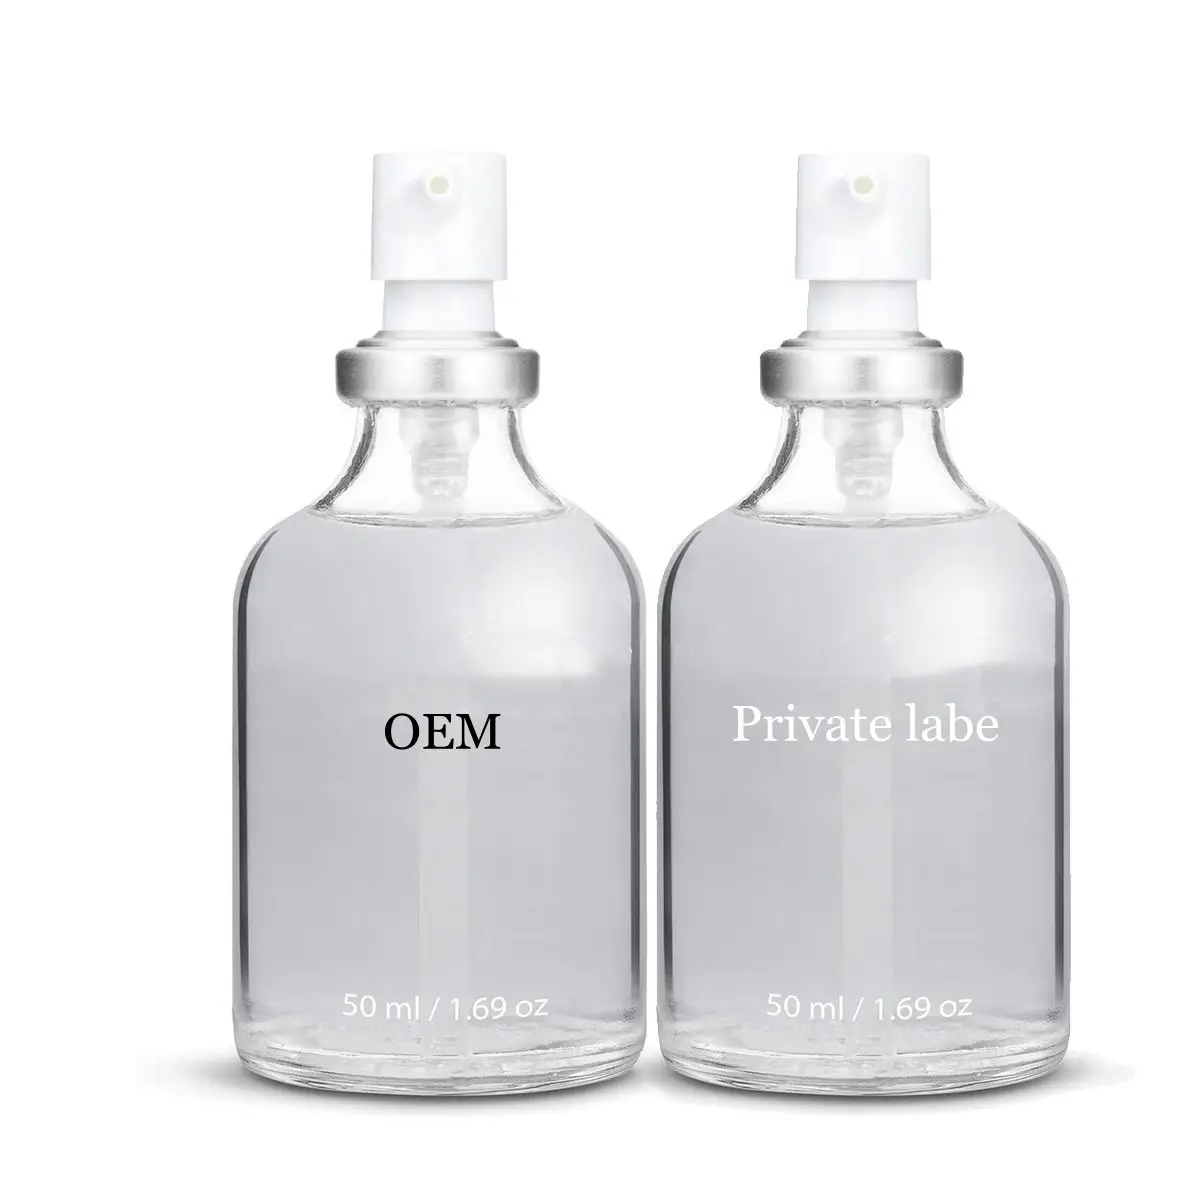 High End Private LOGO Label Silikons chmier mittel auf Silikon basis Luxus-Gleitmittel öl Sexuelles Gel für Paare